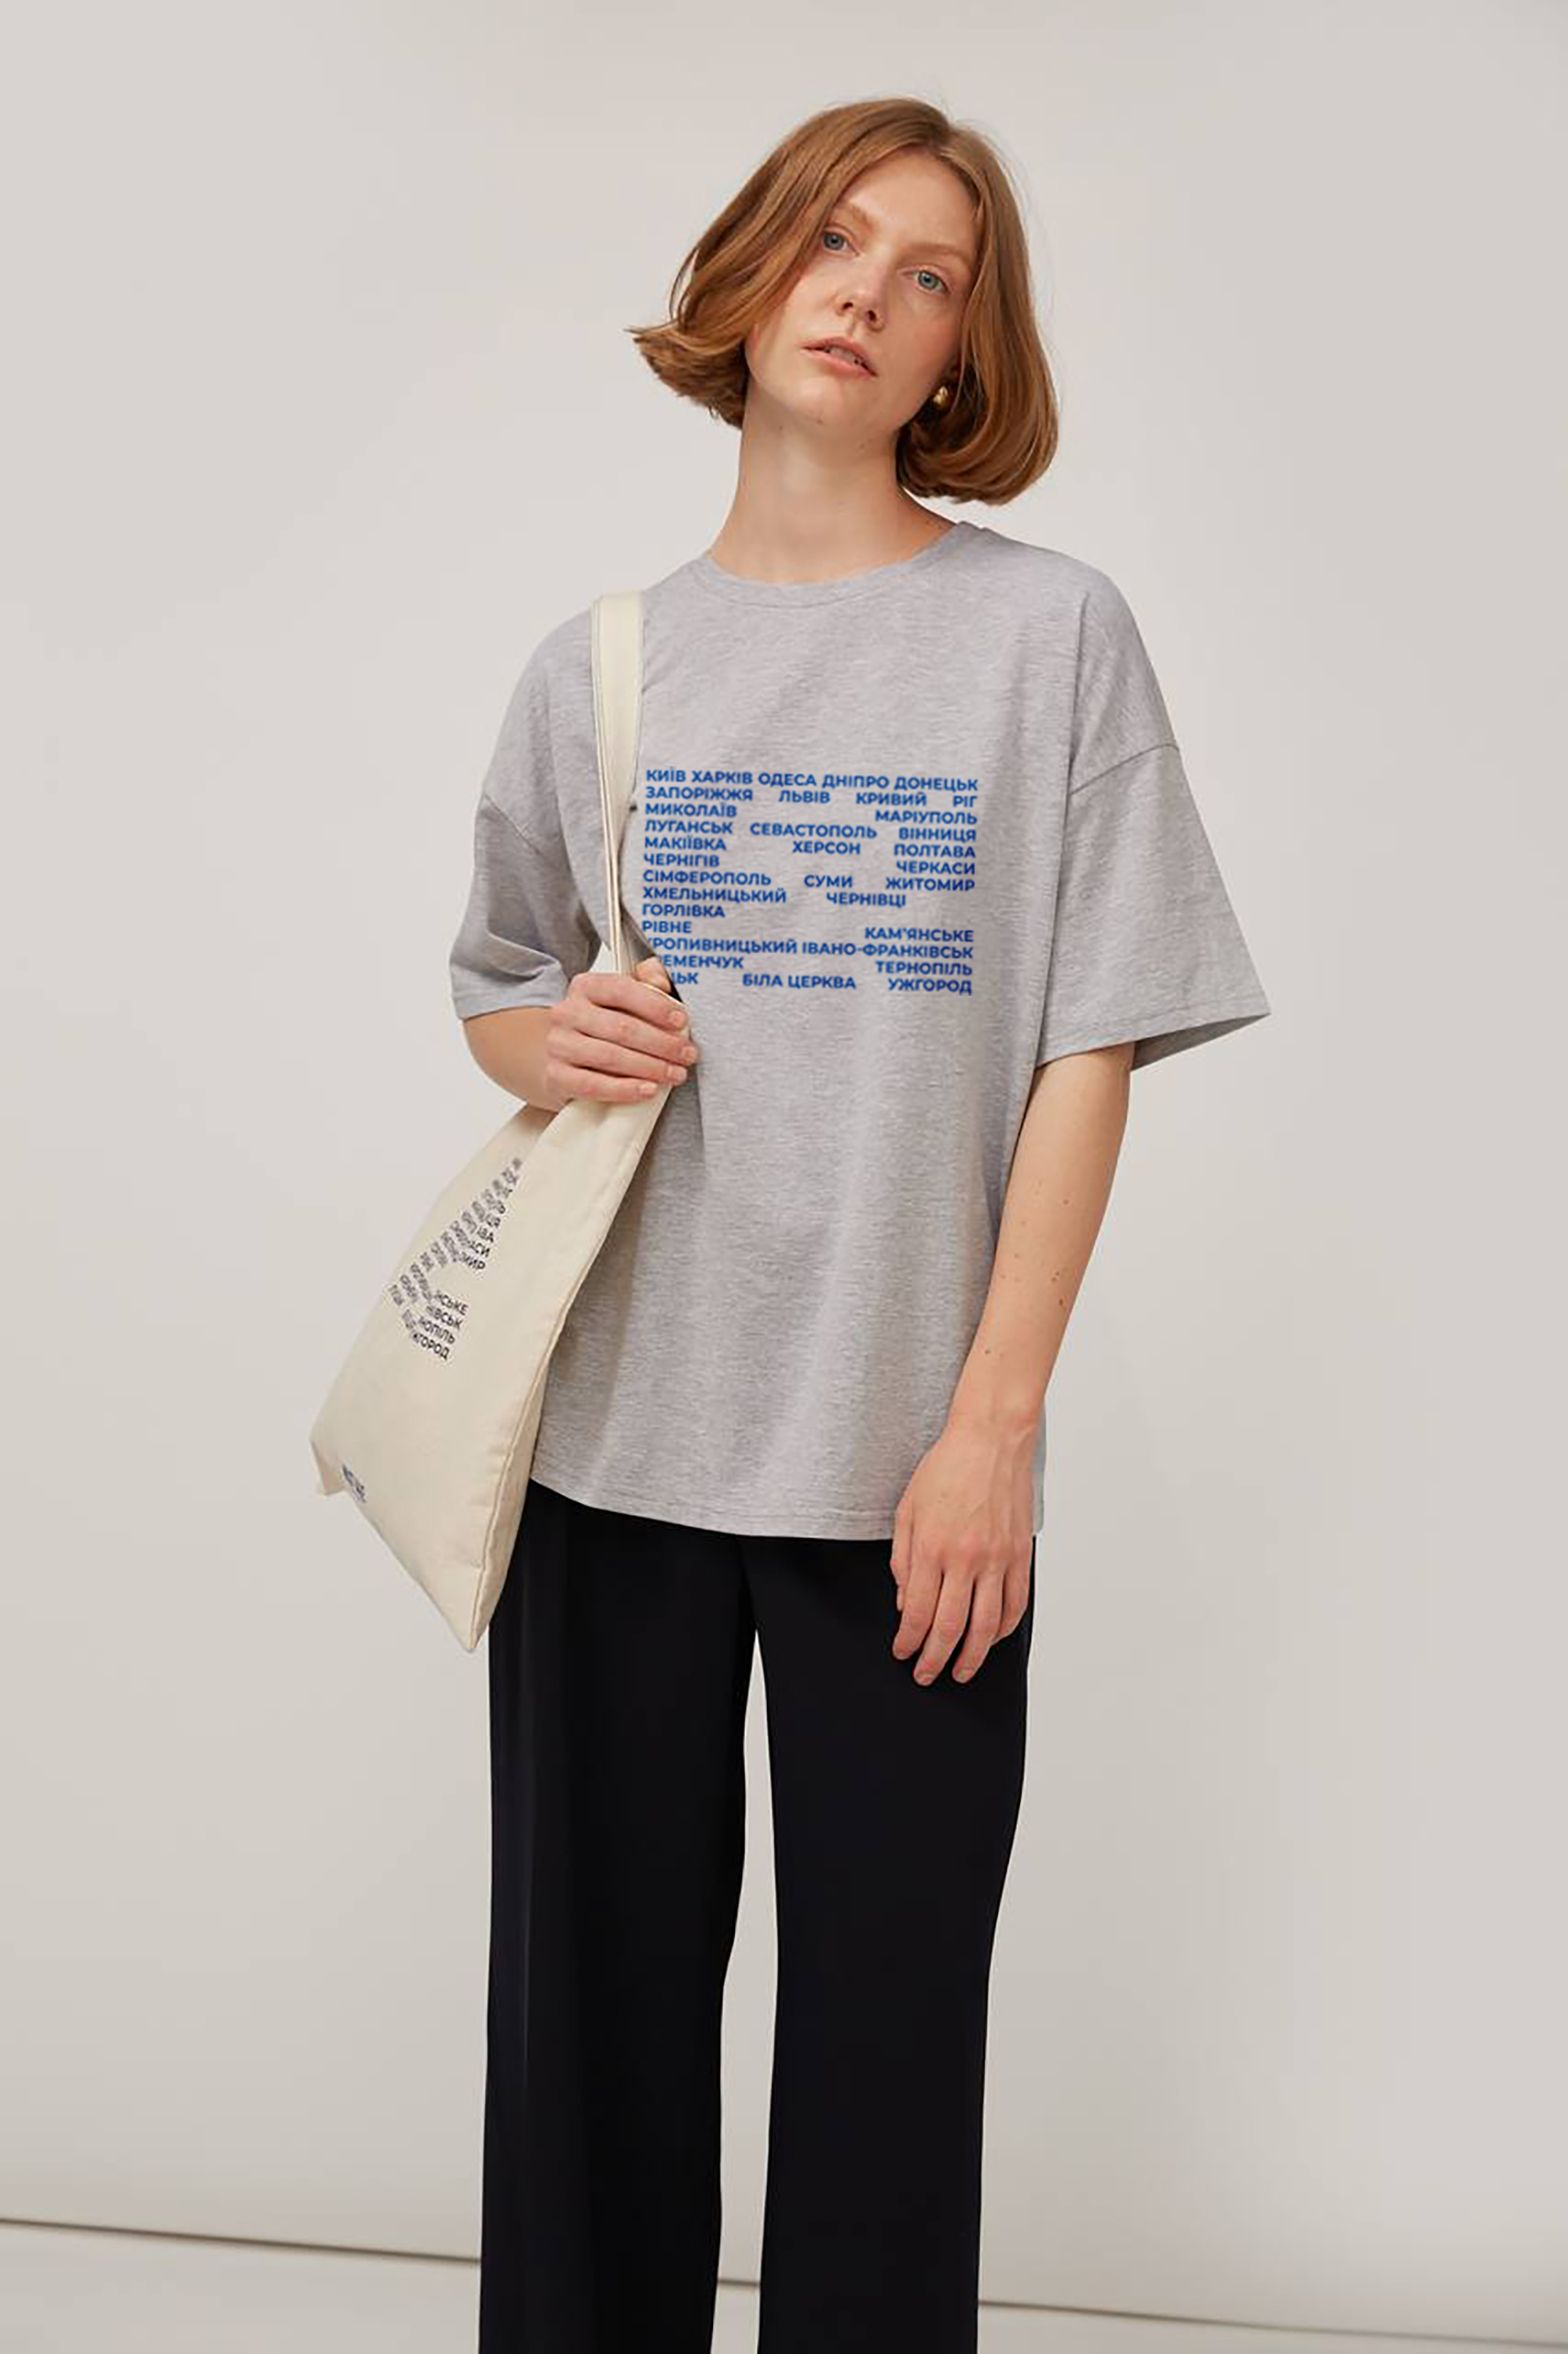 Сіро-меланжева трикотажна футболка з написом "Міста", фото 2